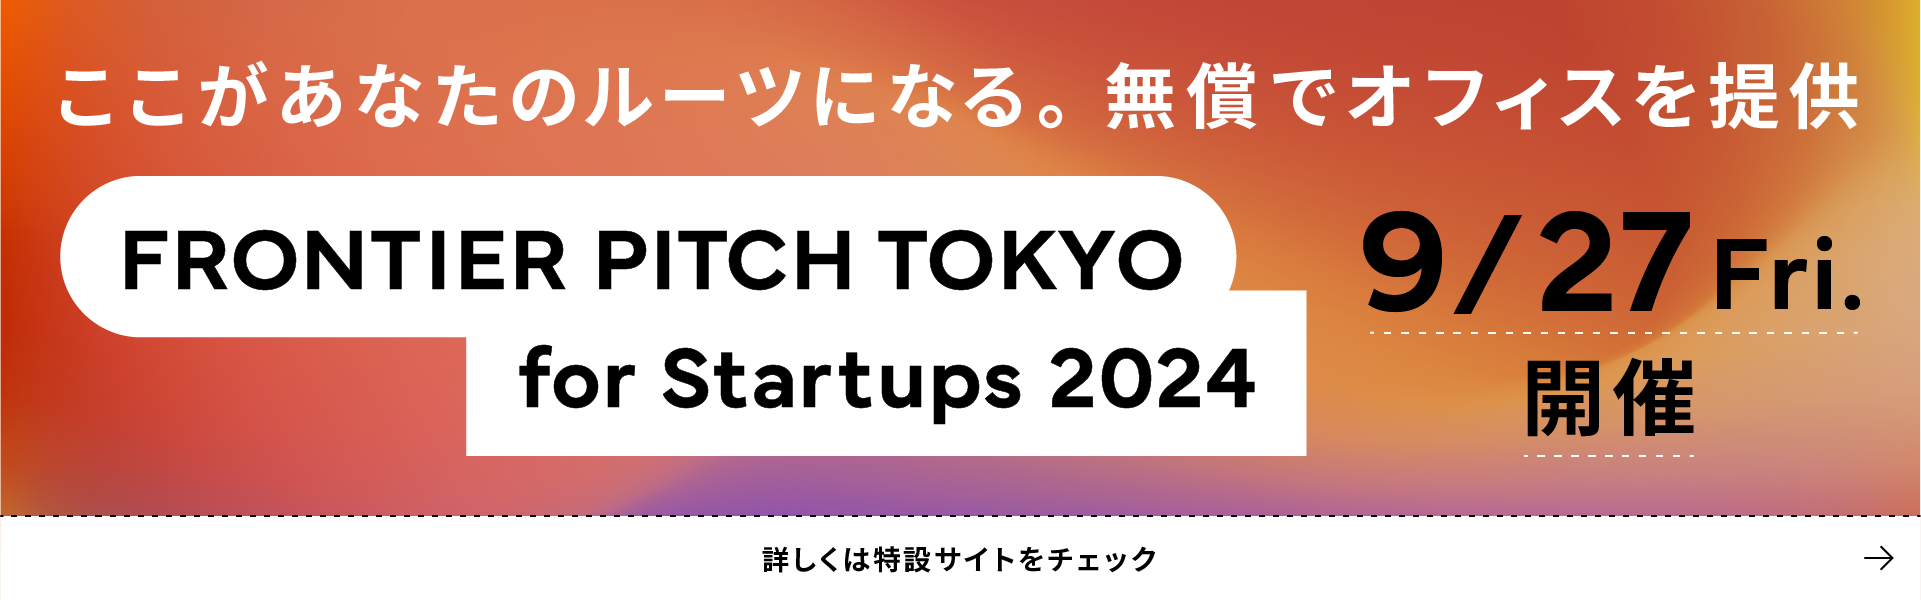 ここがあなたのルーツになる。無償でオフィスを提供 Frontier pitch Tokyo for Startups 2024 9/27 Fri. 開催